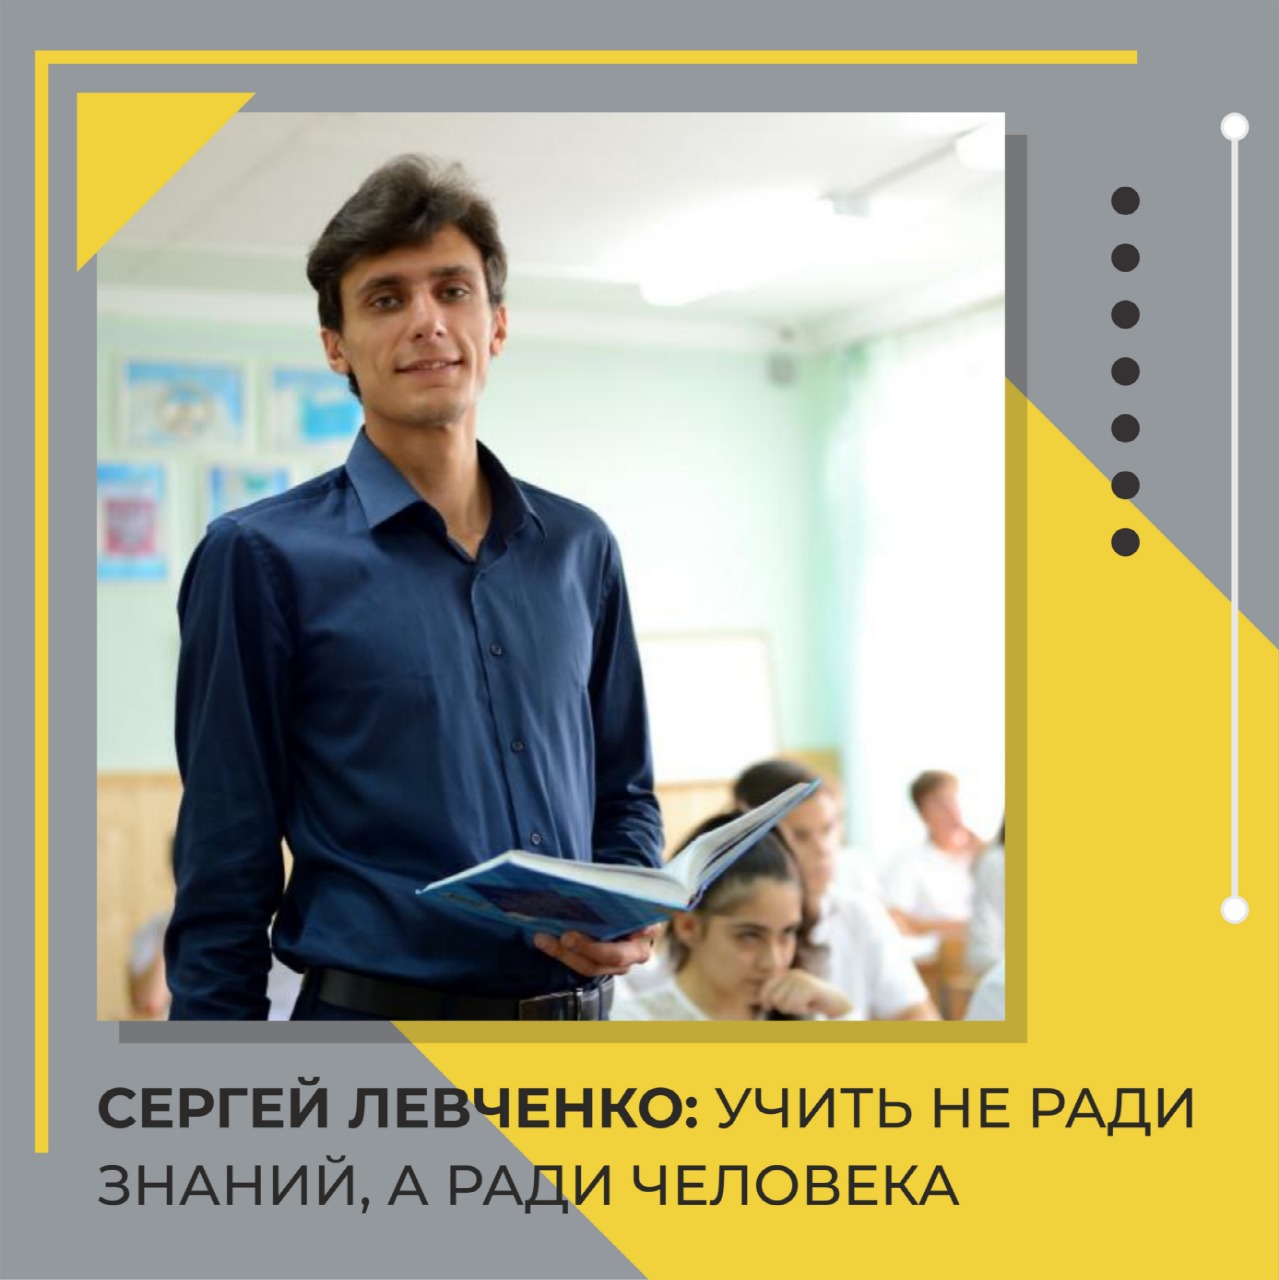 Сергей Левченко: учить не ради знаний, а ради человека